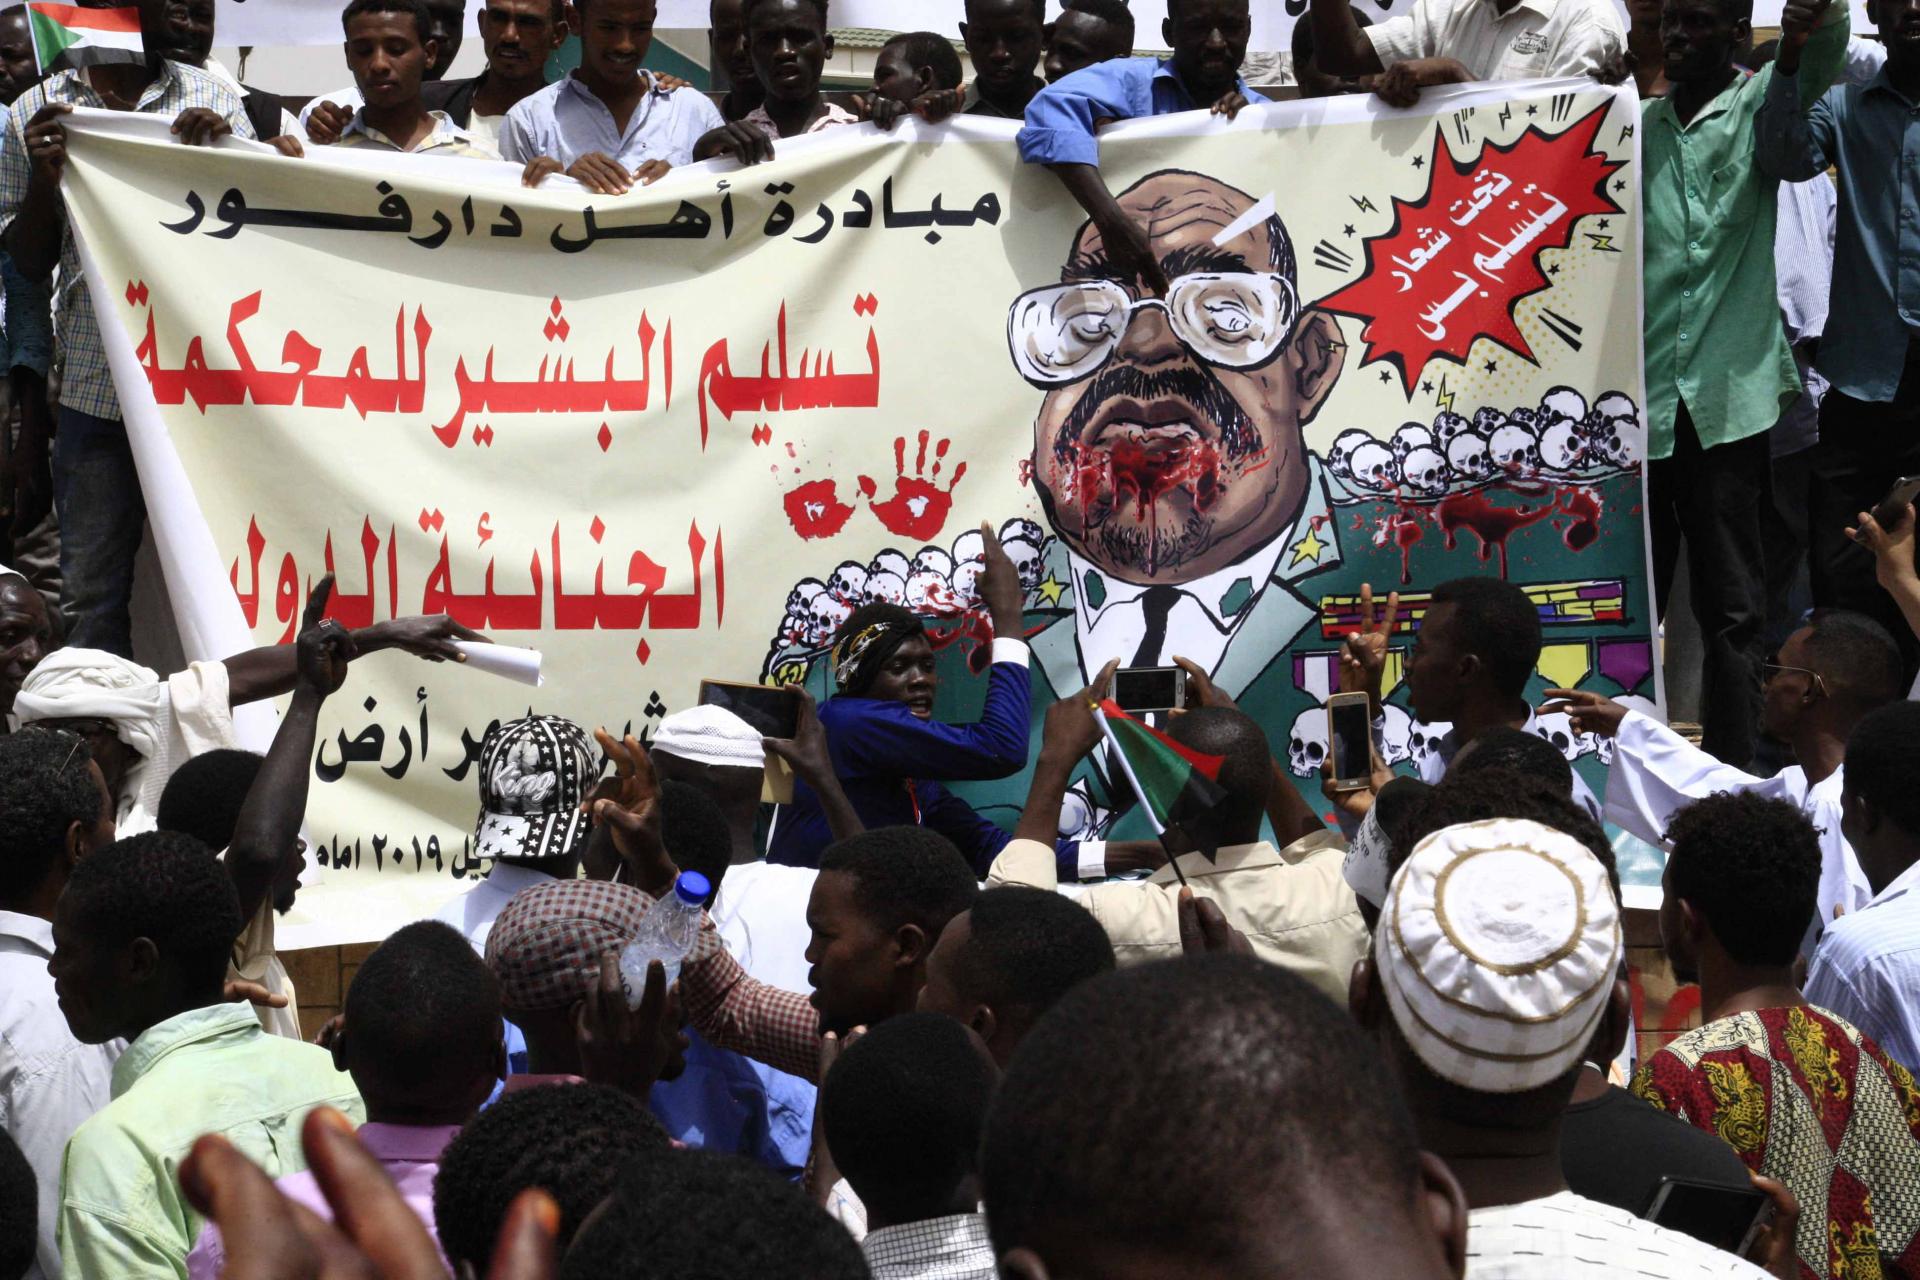 دعوات لمحاكمة الرئيس السوداني المعزول عمر البشير امام المحكمة الجنائية الدولية